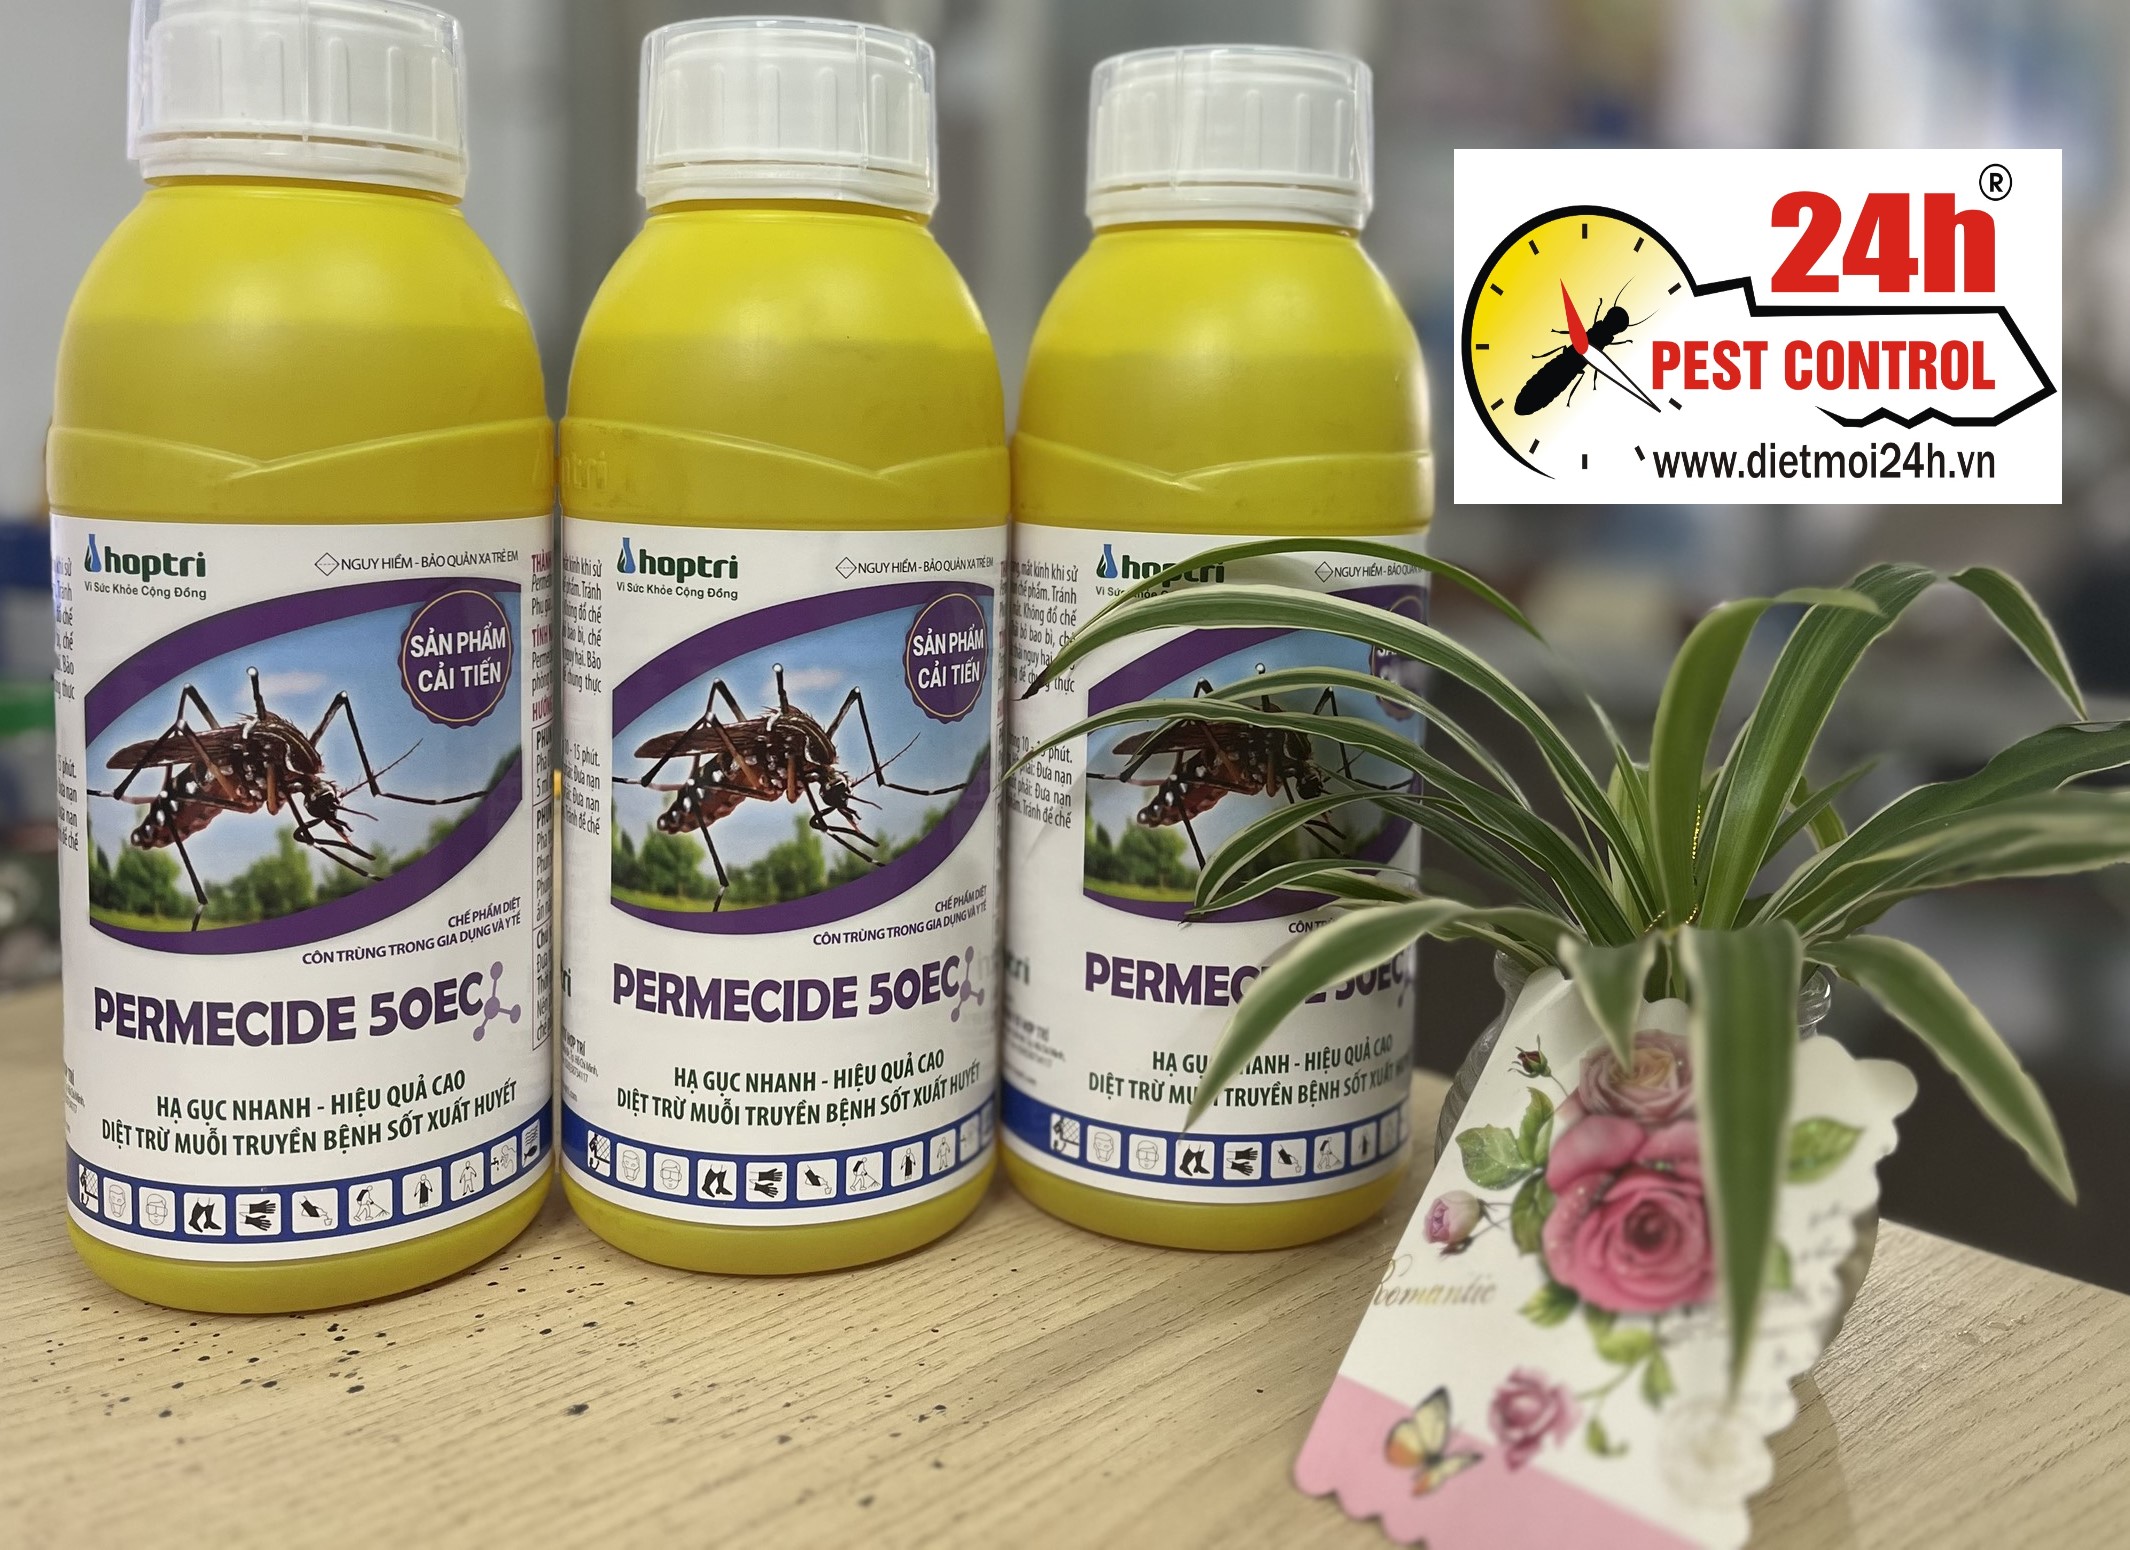 Thuốc diệt muỗi Permecide 50EC mới, an toàn, hiệu quả với muỗi kháng thuốc (chai 1 lít)